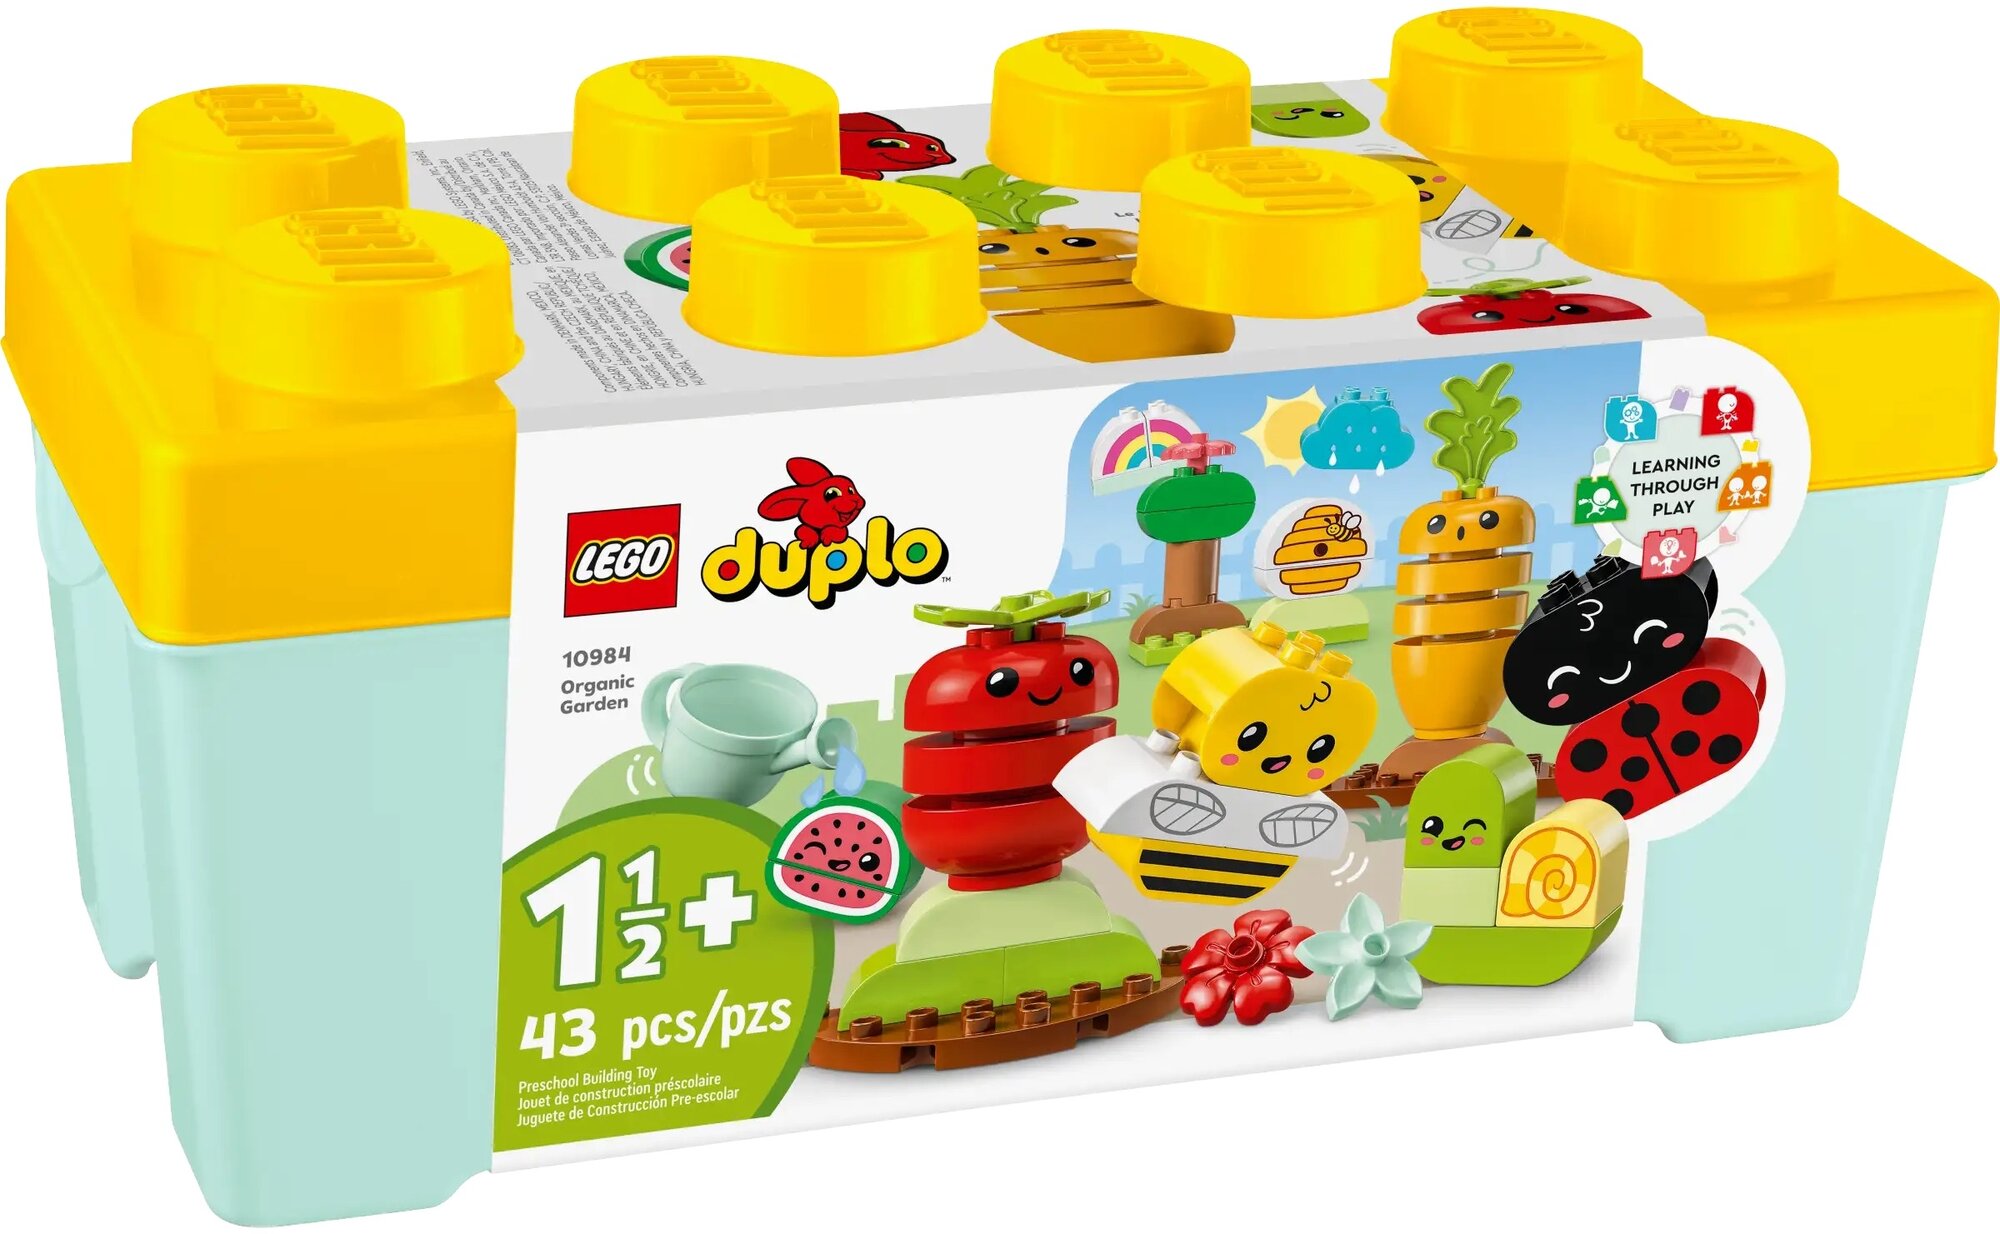 Конструктор LEGO Duplo 10984 Organic Garden, 43 дет.